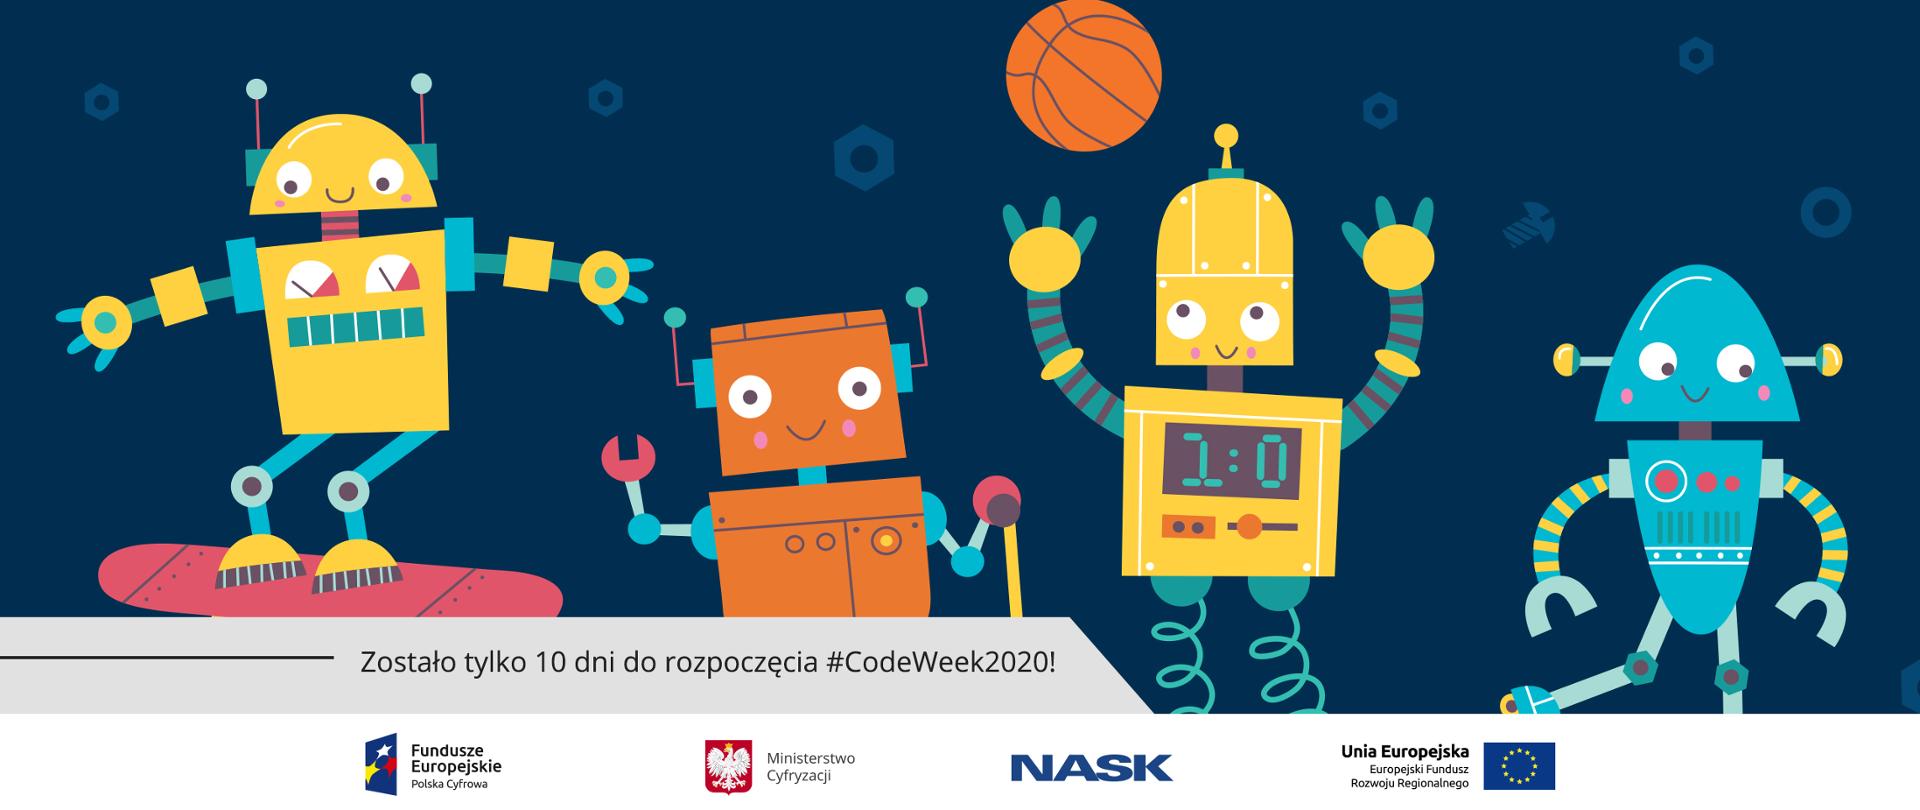 Grafika wektorowa - różnokolorowe roboty na granatowym tle. Na dole tekst: Zostało tylko 10 dni do rozpoczęcia #CodeWeek2020!